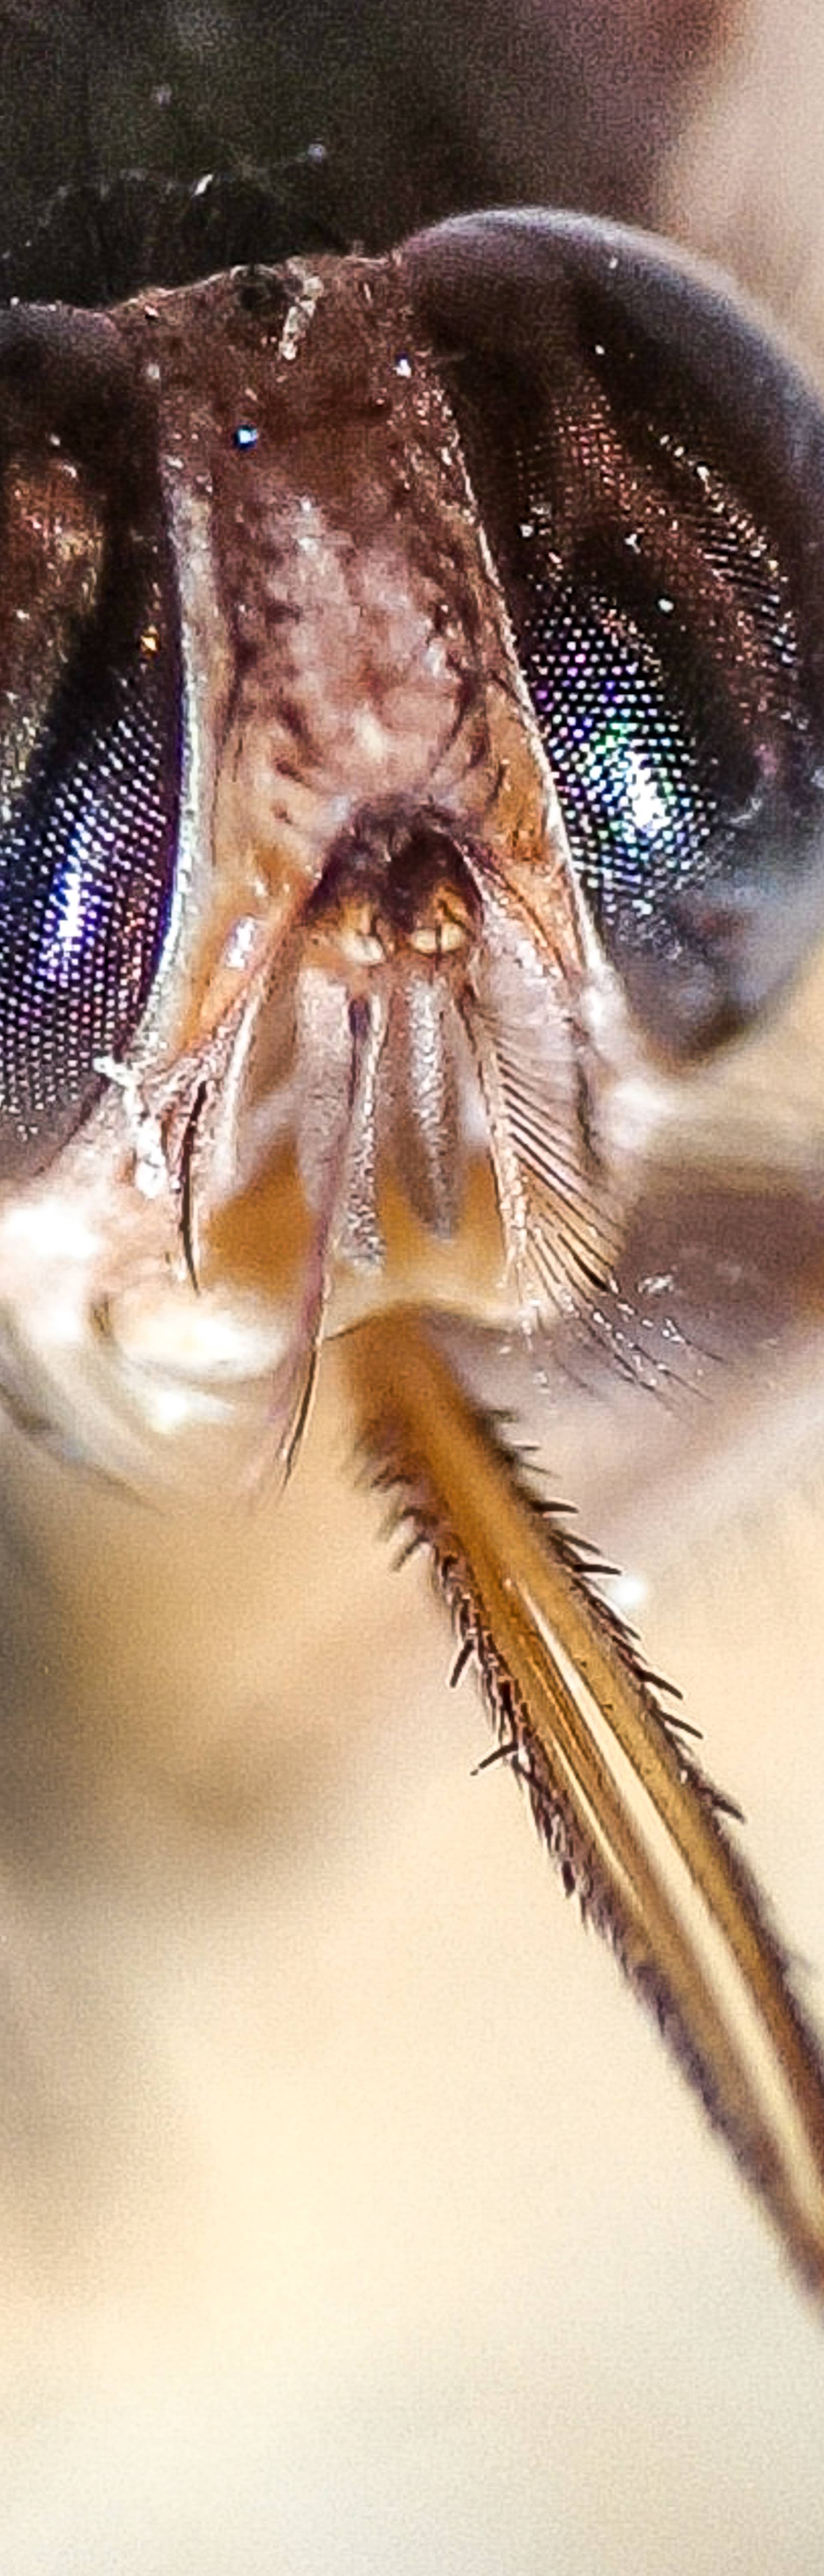 Pet najopasnijih insekata: Ubod ovog mrava boli poput metka